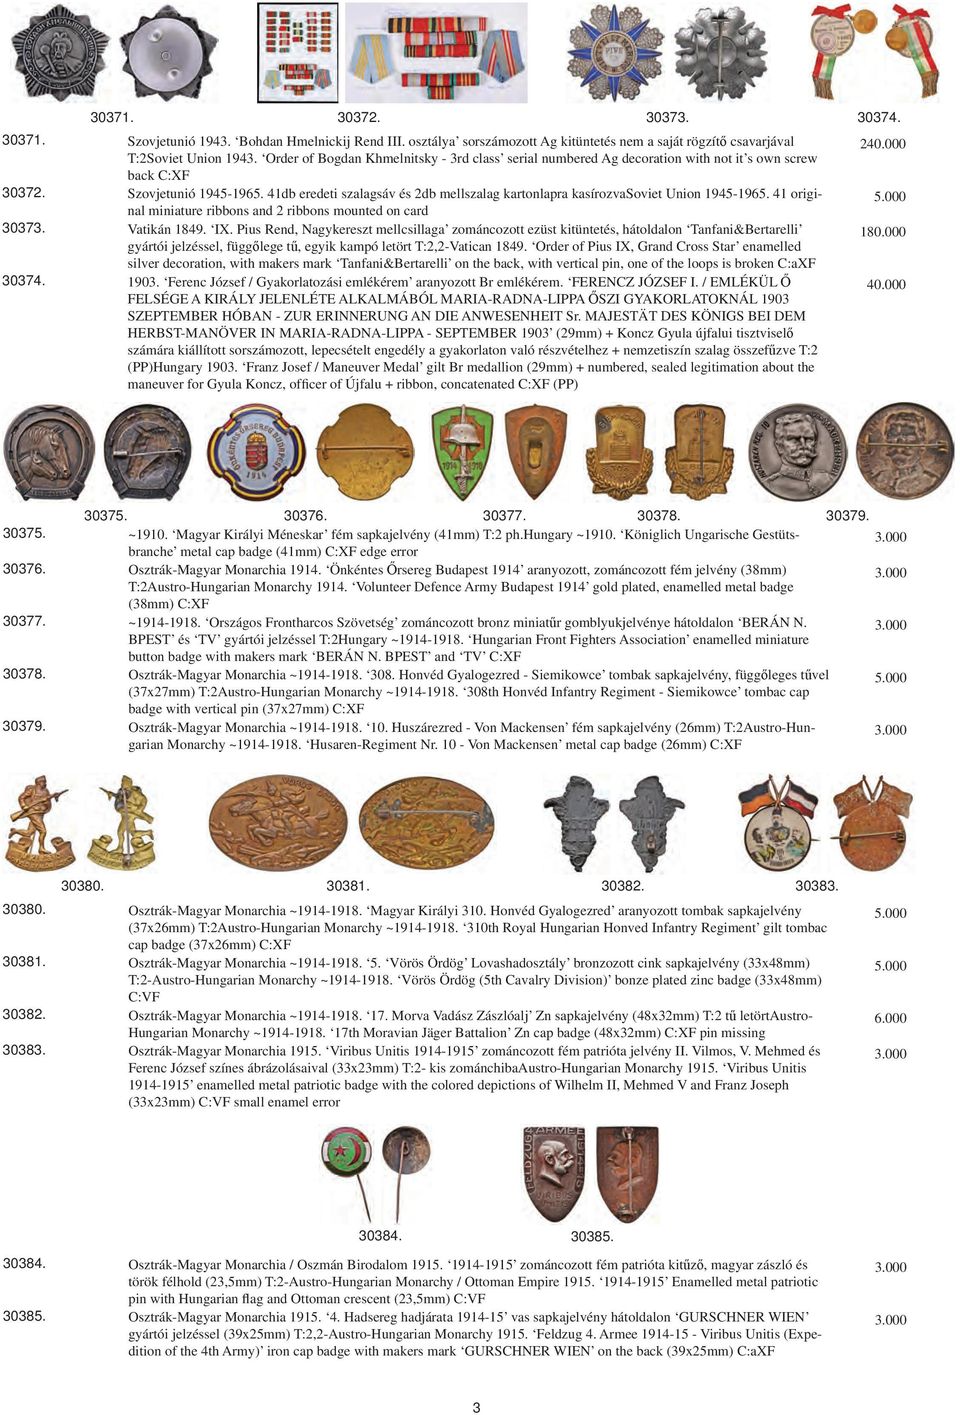 41db eredeti szalagsáv és 2db mellszalag kartonlapra kasírozvasoviet Union 1945-1965. 41 original miniature ribbons and 2 ribbons mounted on card Vatikán 1849. IX.